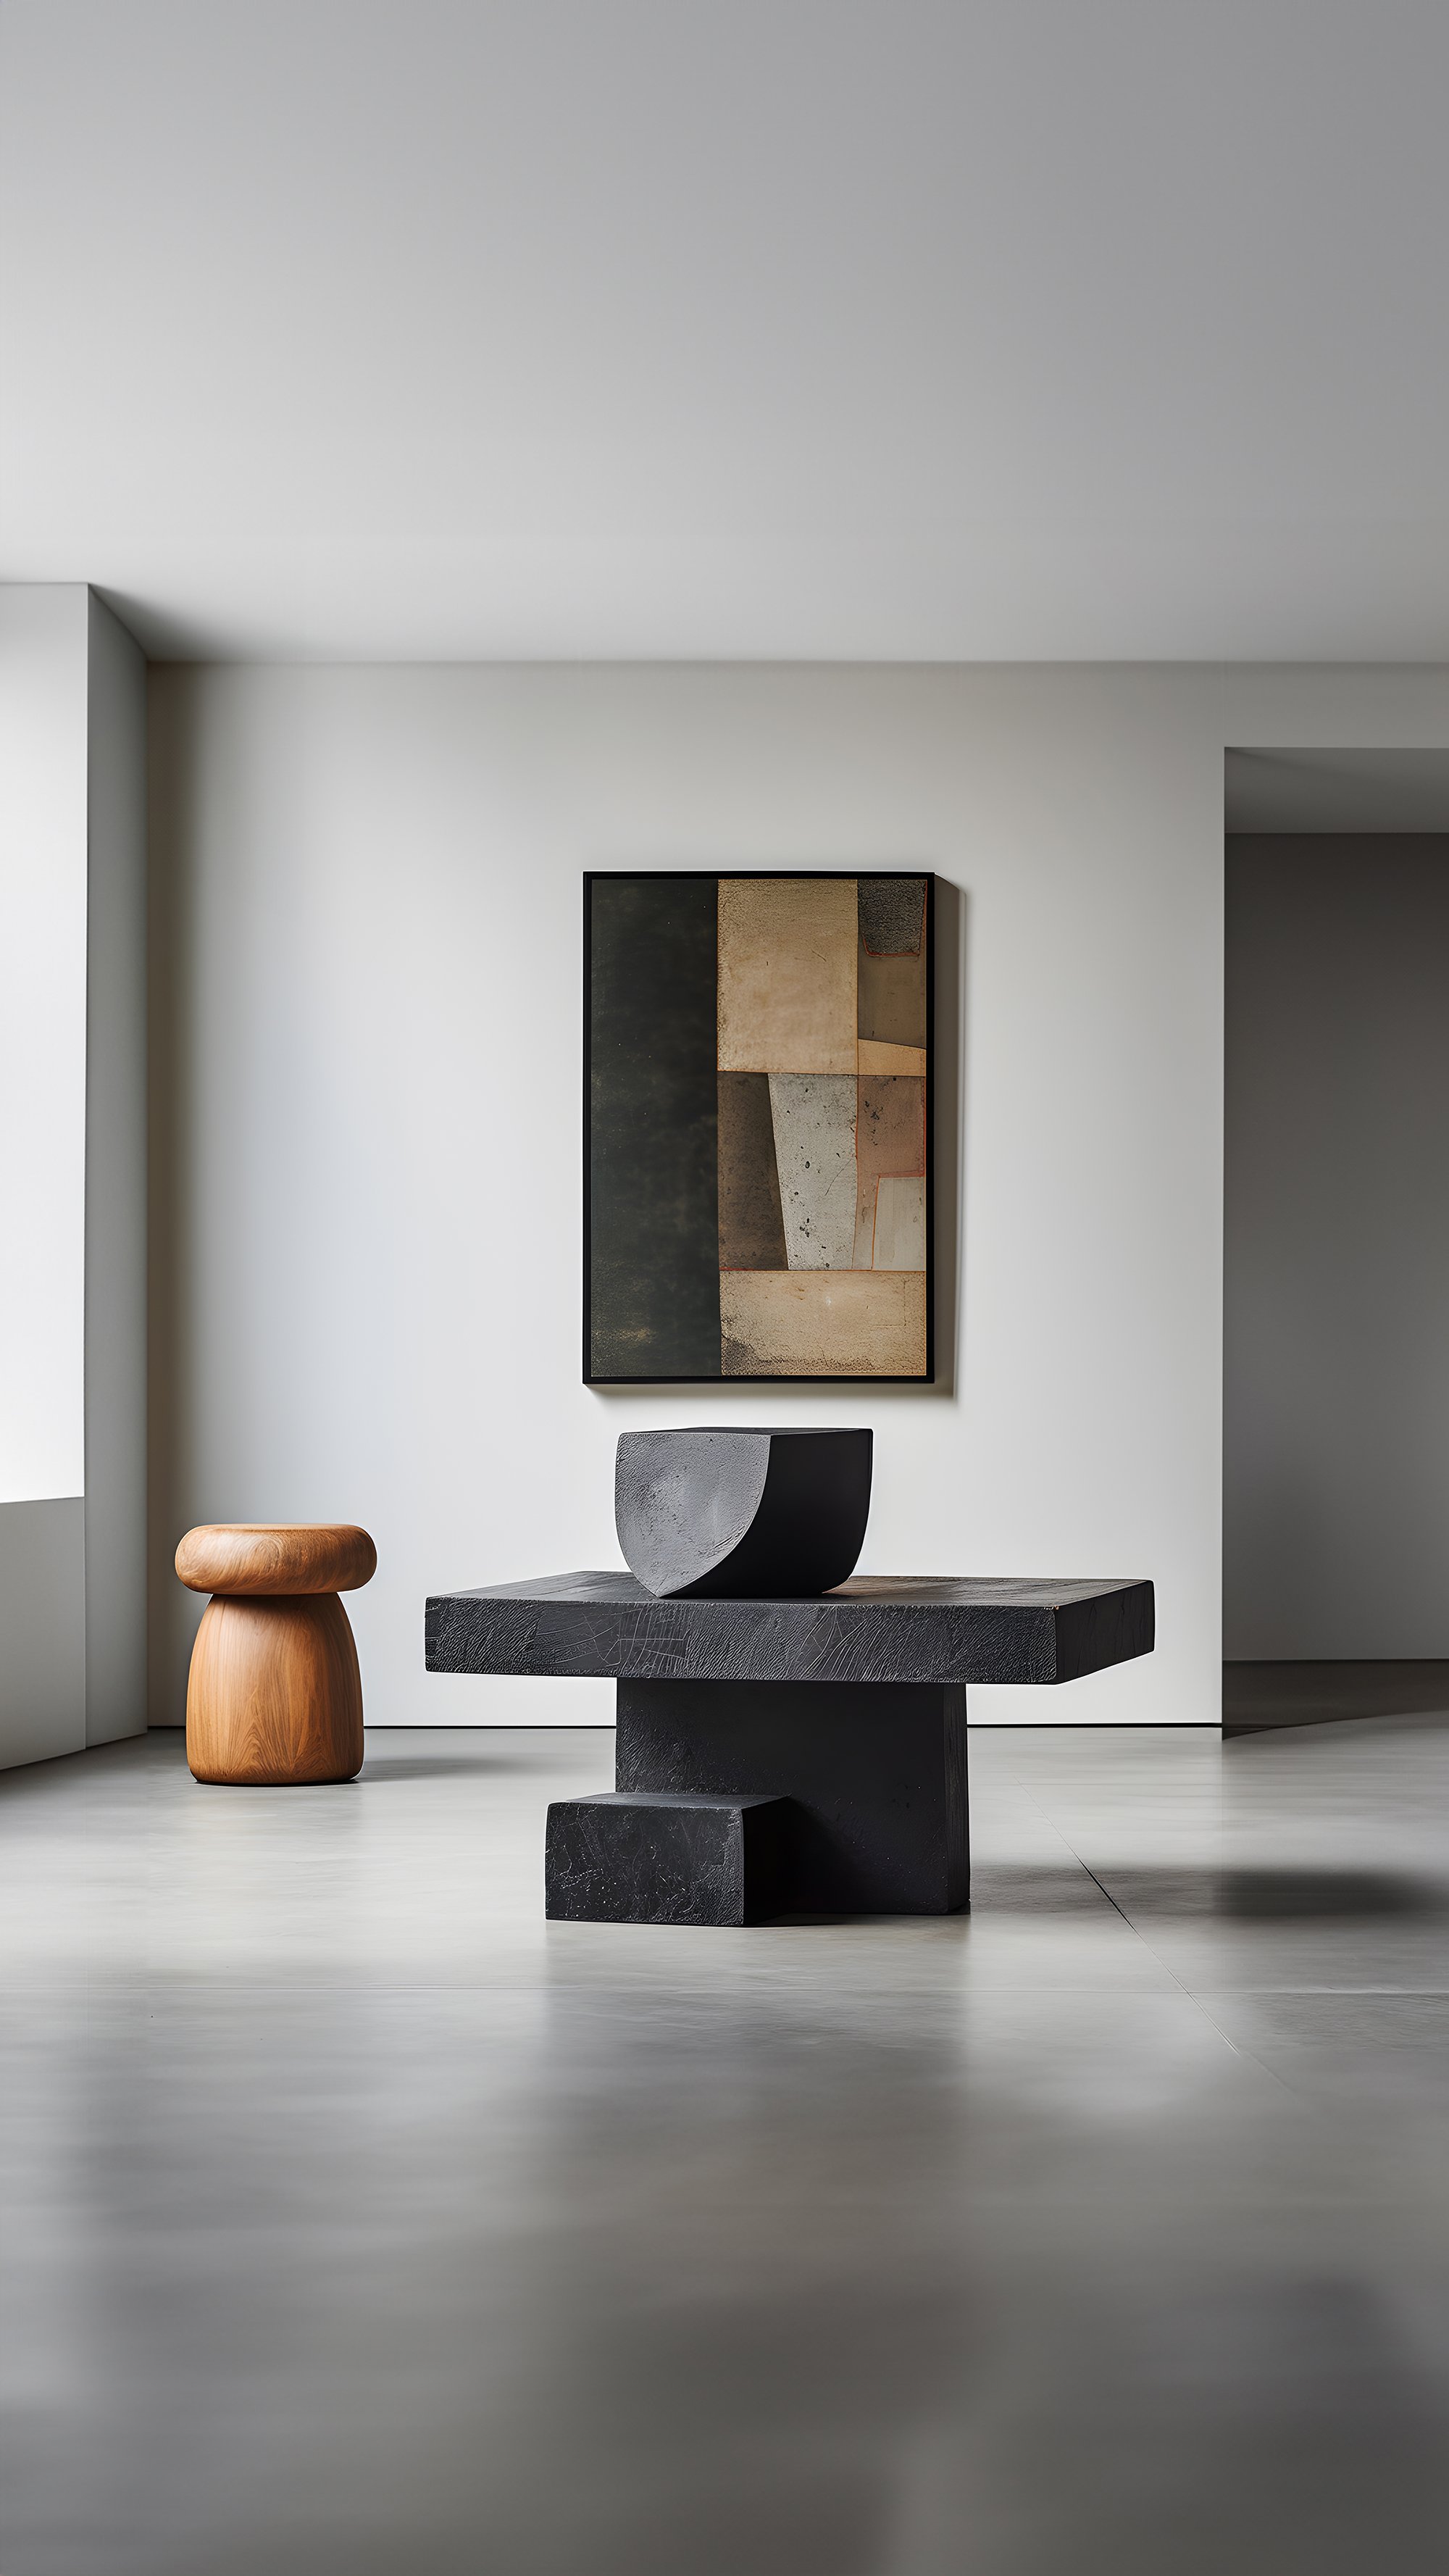 Sculptural Unseen Force #2 Joel Escalona's Solid Wood Table, Modern Art Piece —5.jpg